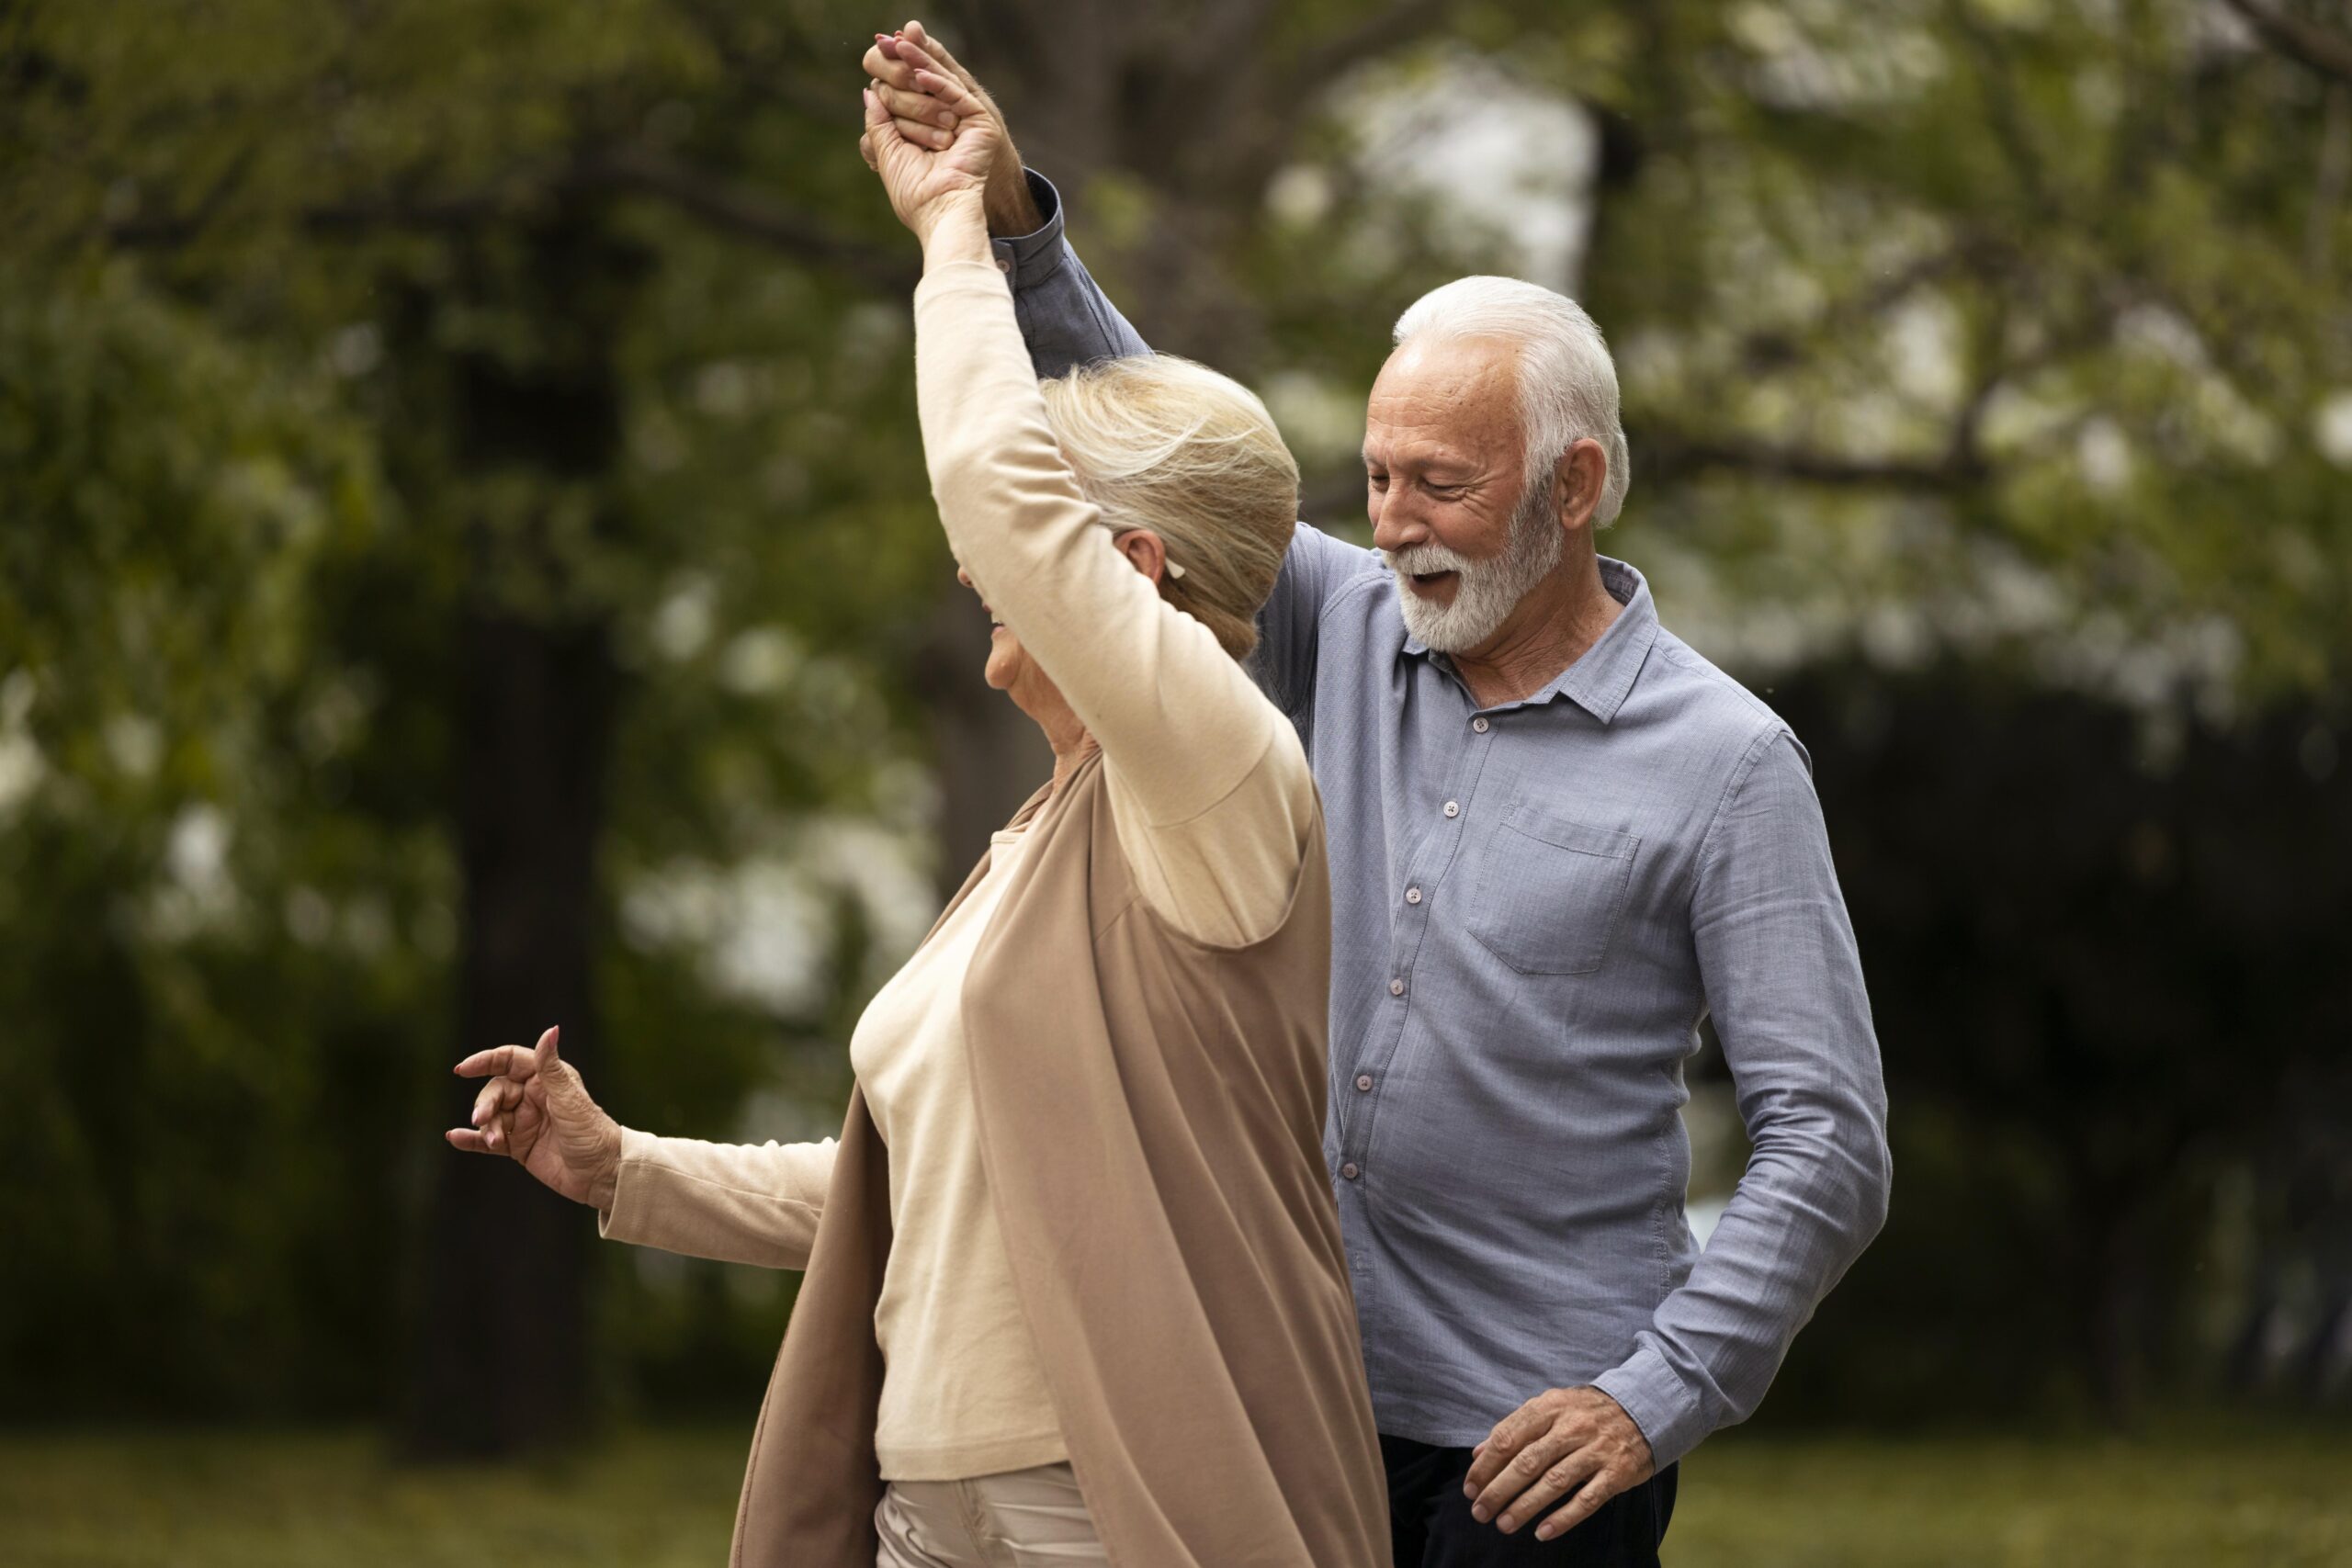 Para seniorów tańczy w parku. Mężczyzna ubrany jest w niebieską koszulę, kobieta w beżowy sweterek. Mężczyzna, unosząc dłoń, prowadzi kobietę do piruetu.